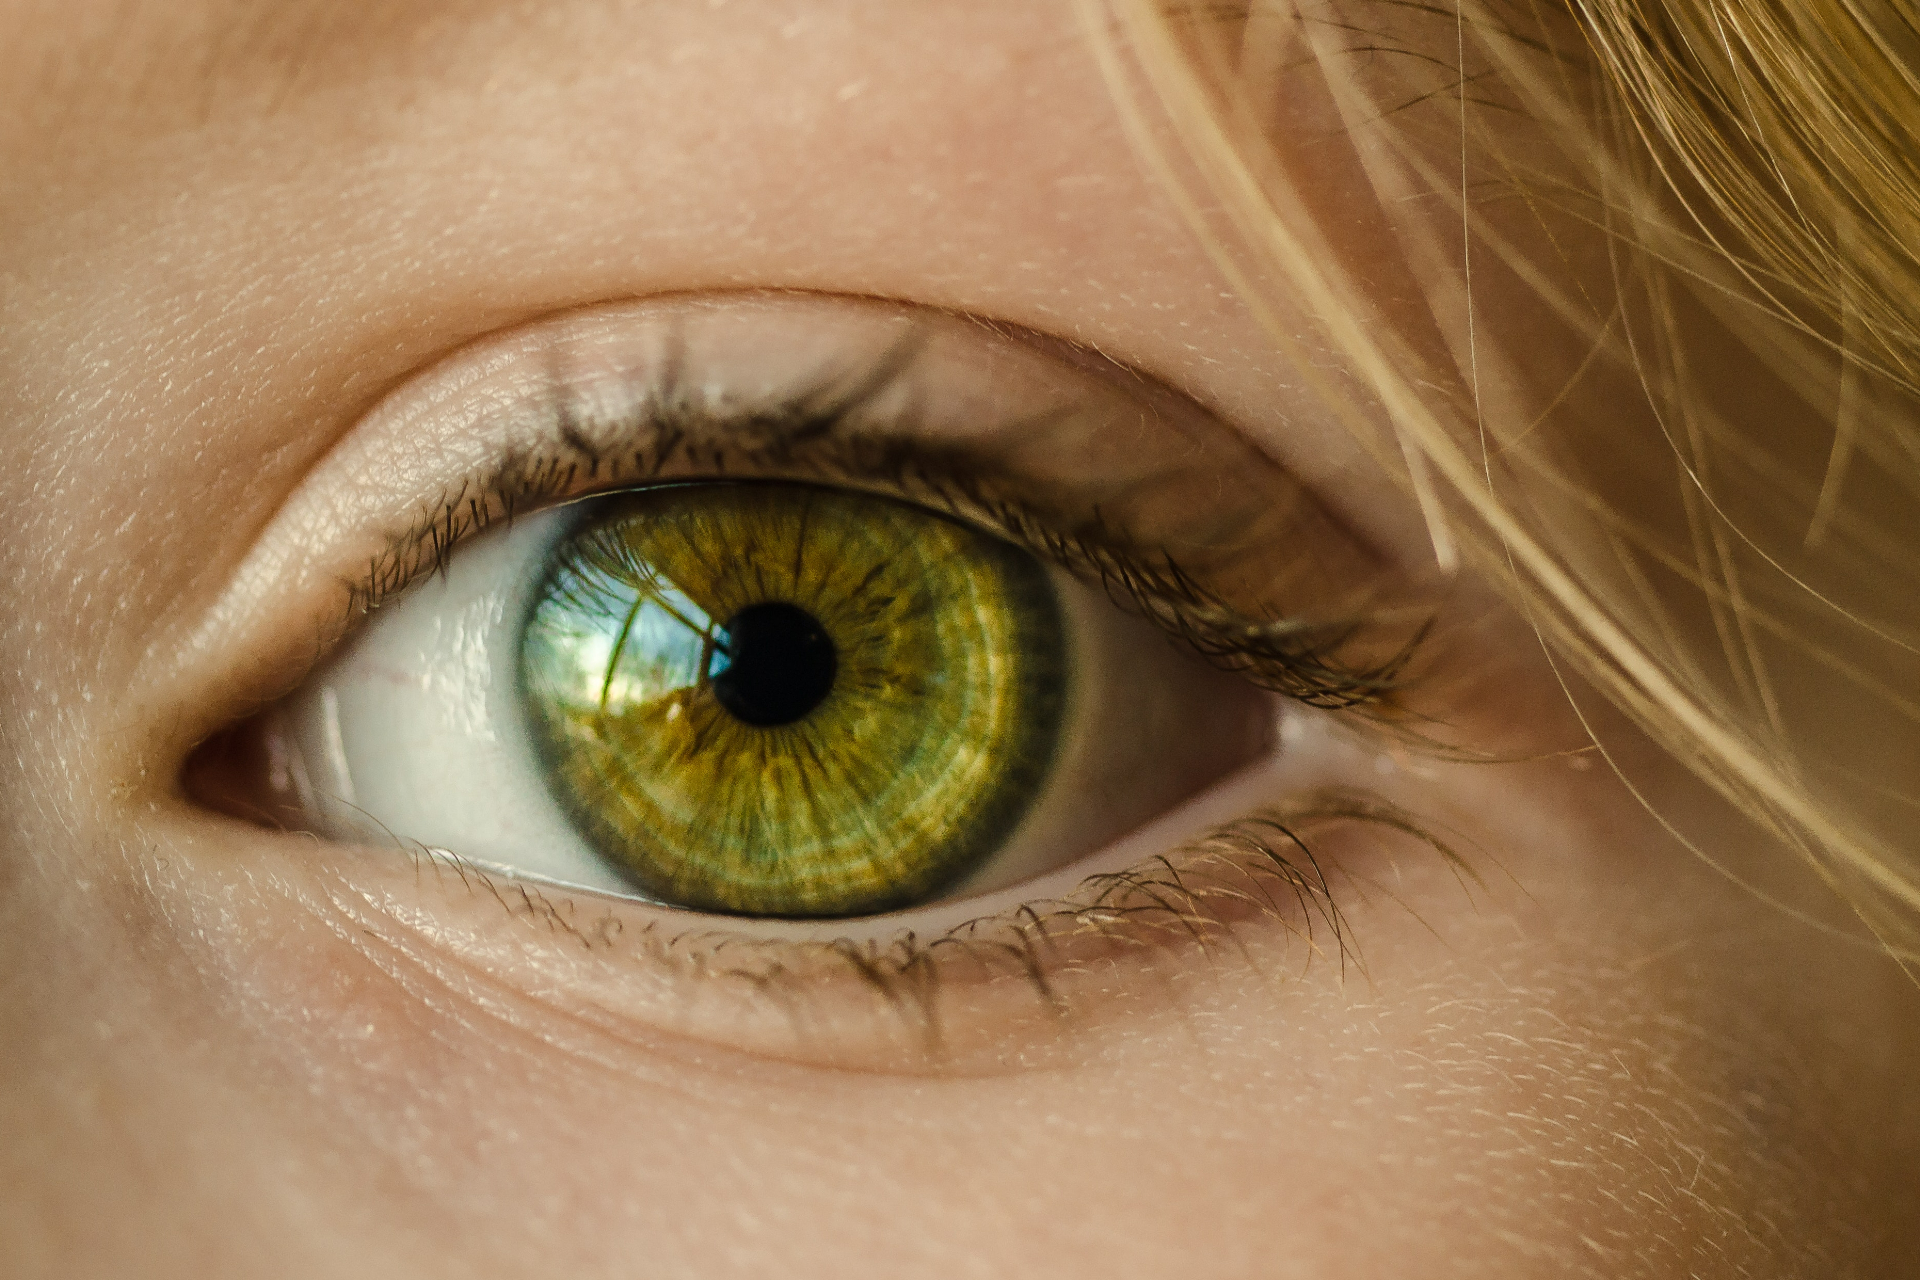 Витамин А, содержащийся в ирге,&nbsp;важен для зрения, поскольку участвует в выработке специального глазного пигмента &mdash; родопсина